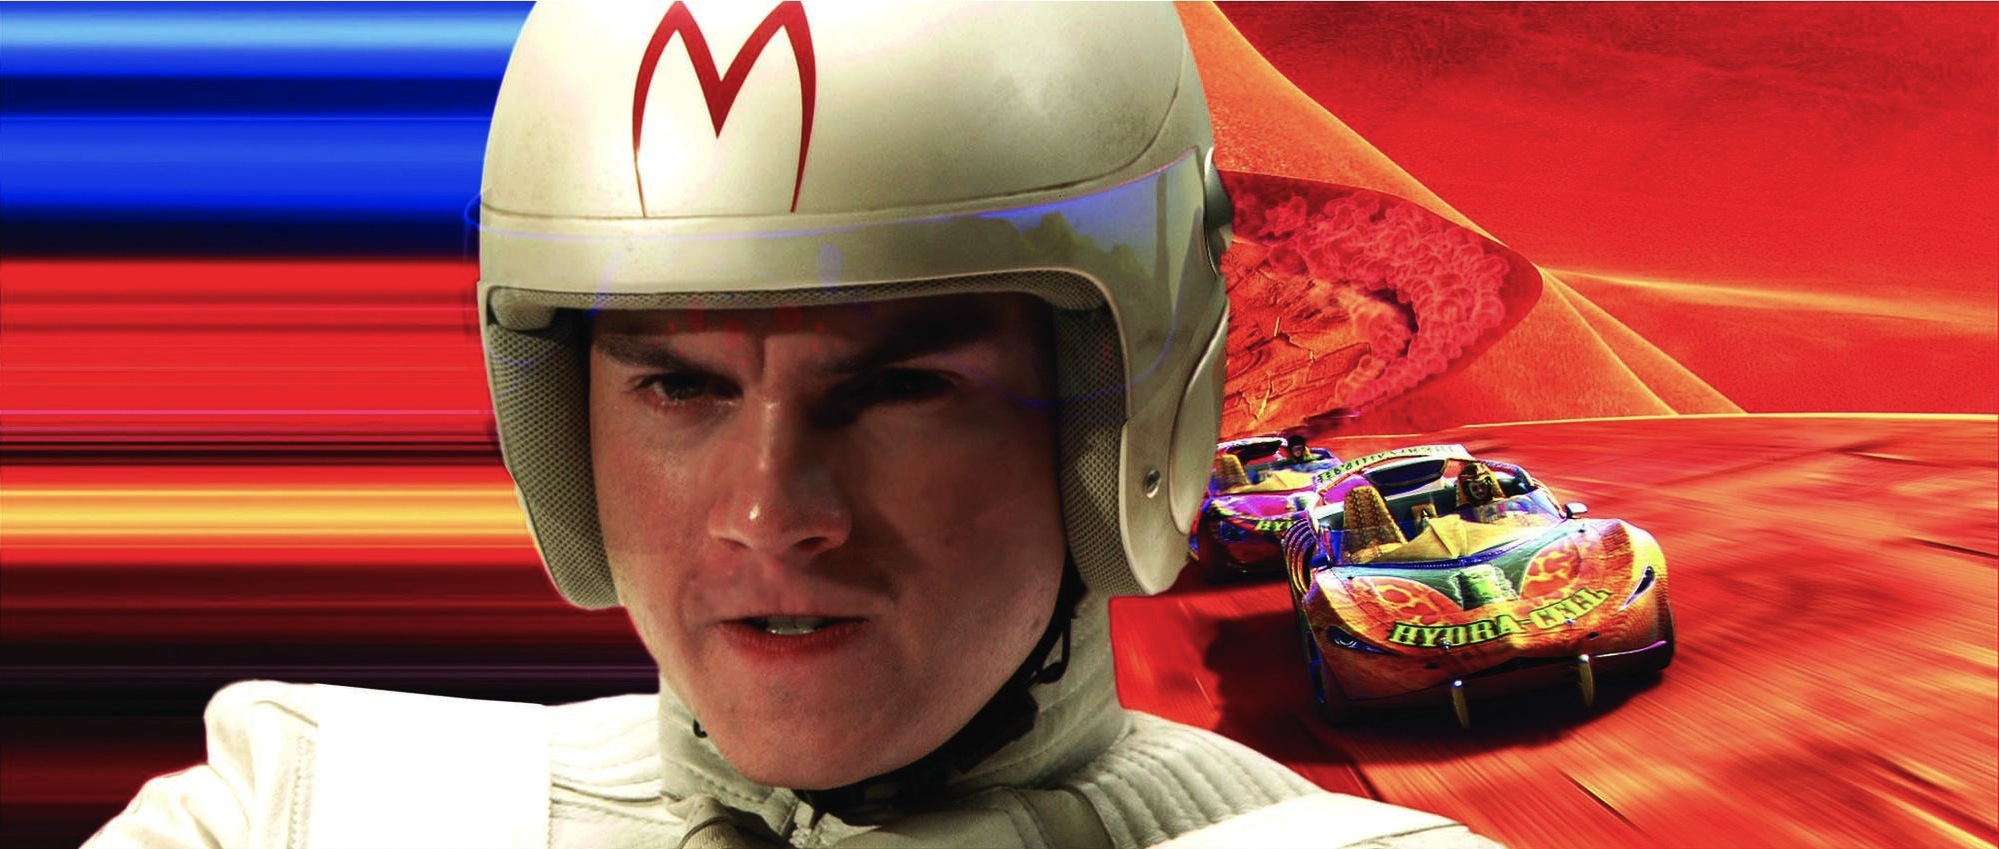 Emile Hirsch in Speed Racer (2008)